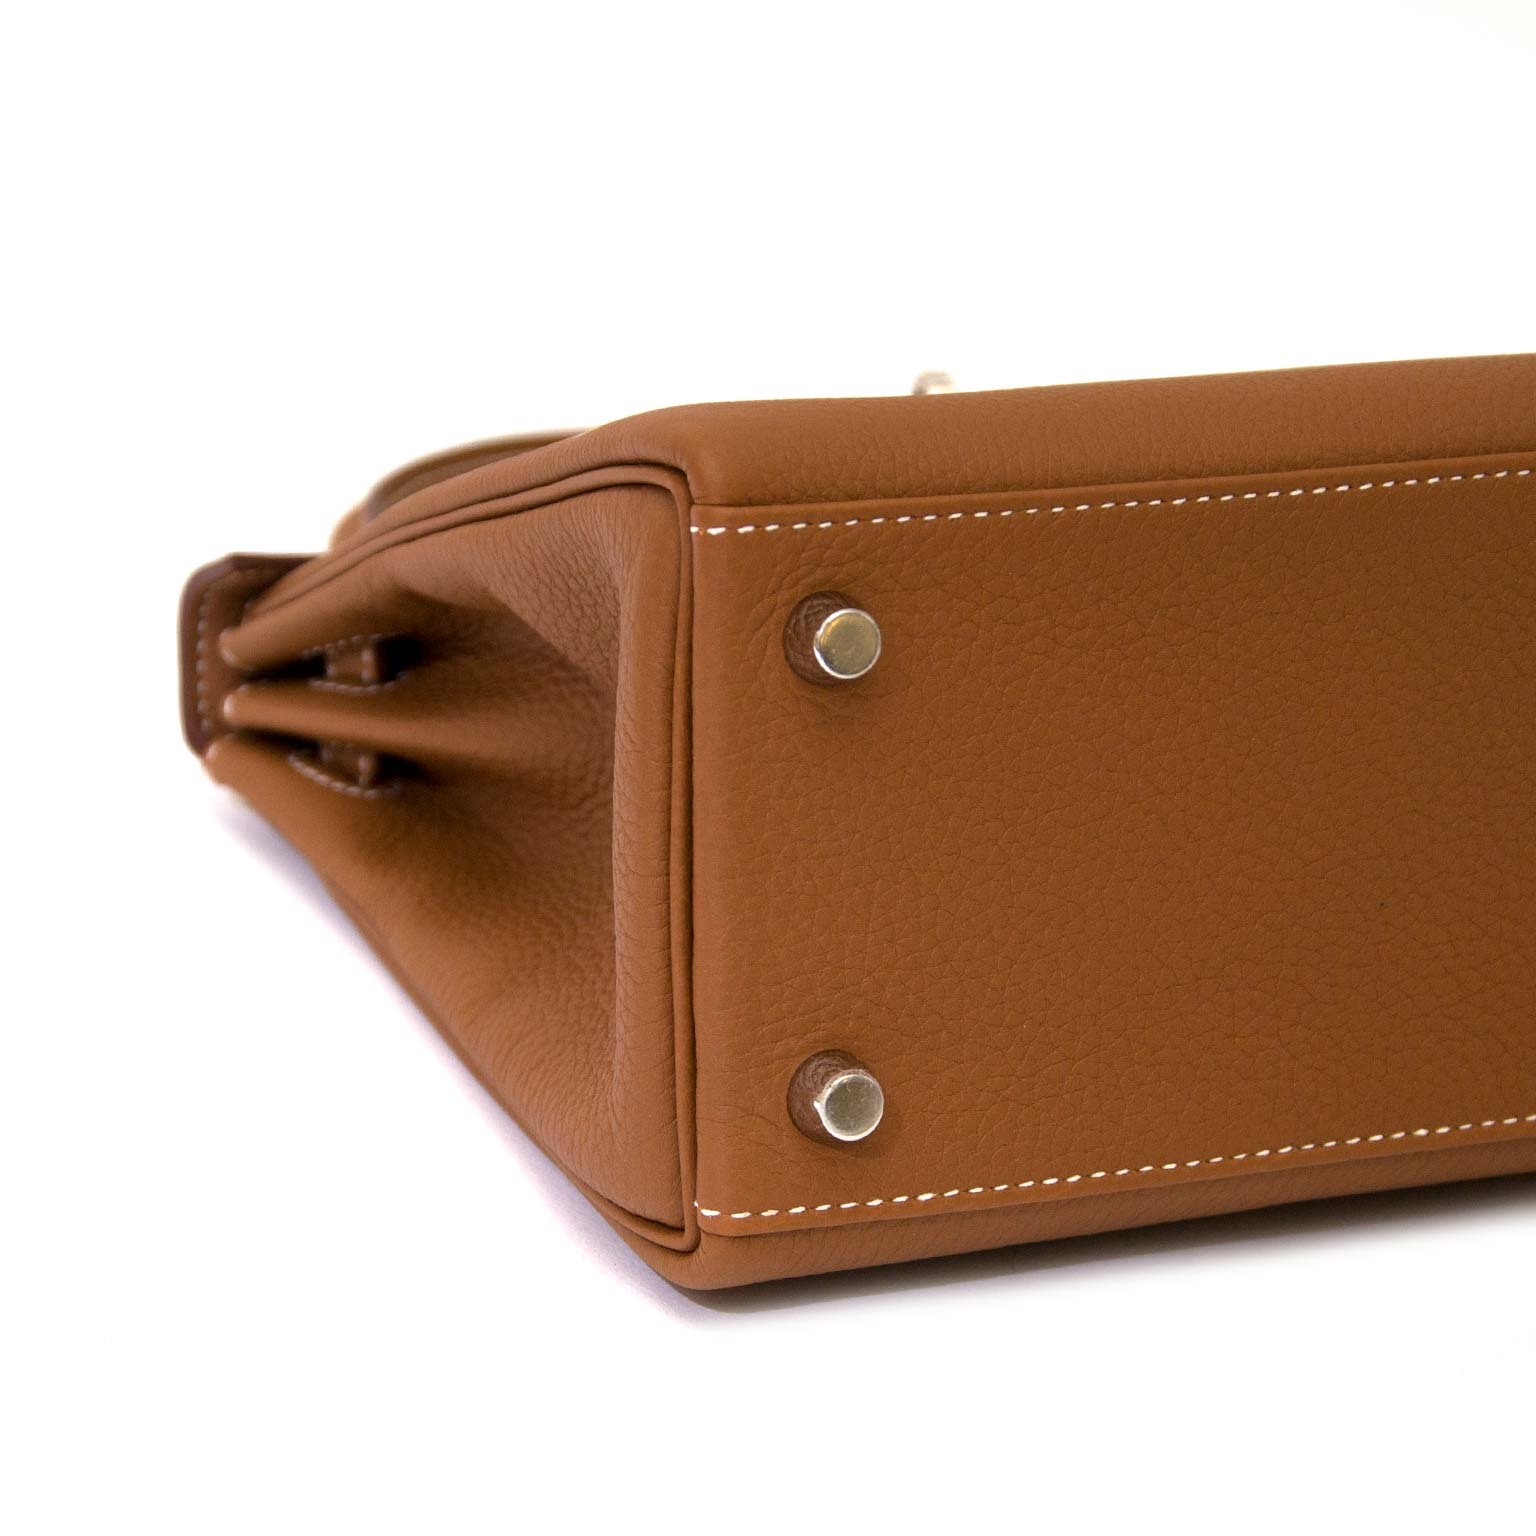 Hermes Kelly 25cm Bag Togo Calfskin Leather Gold Hardware, CK63